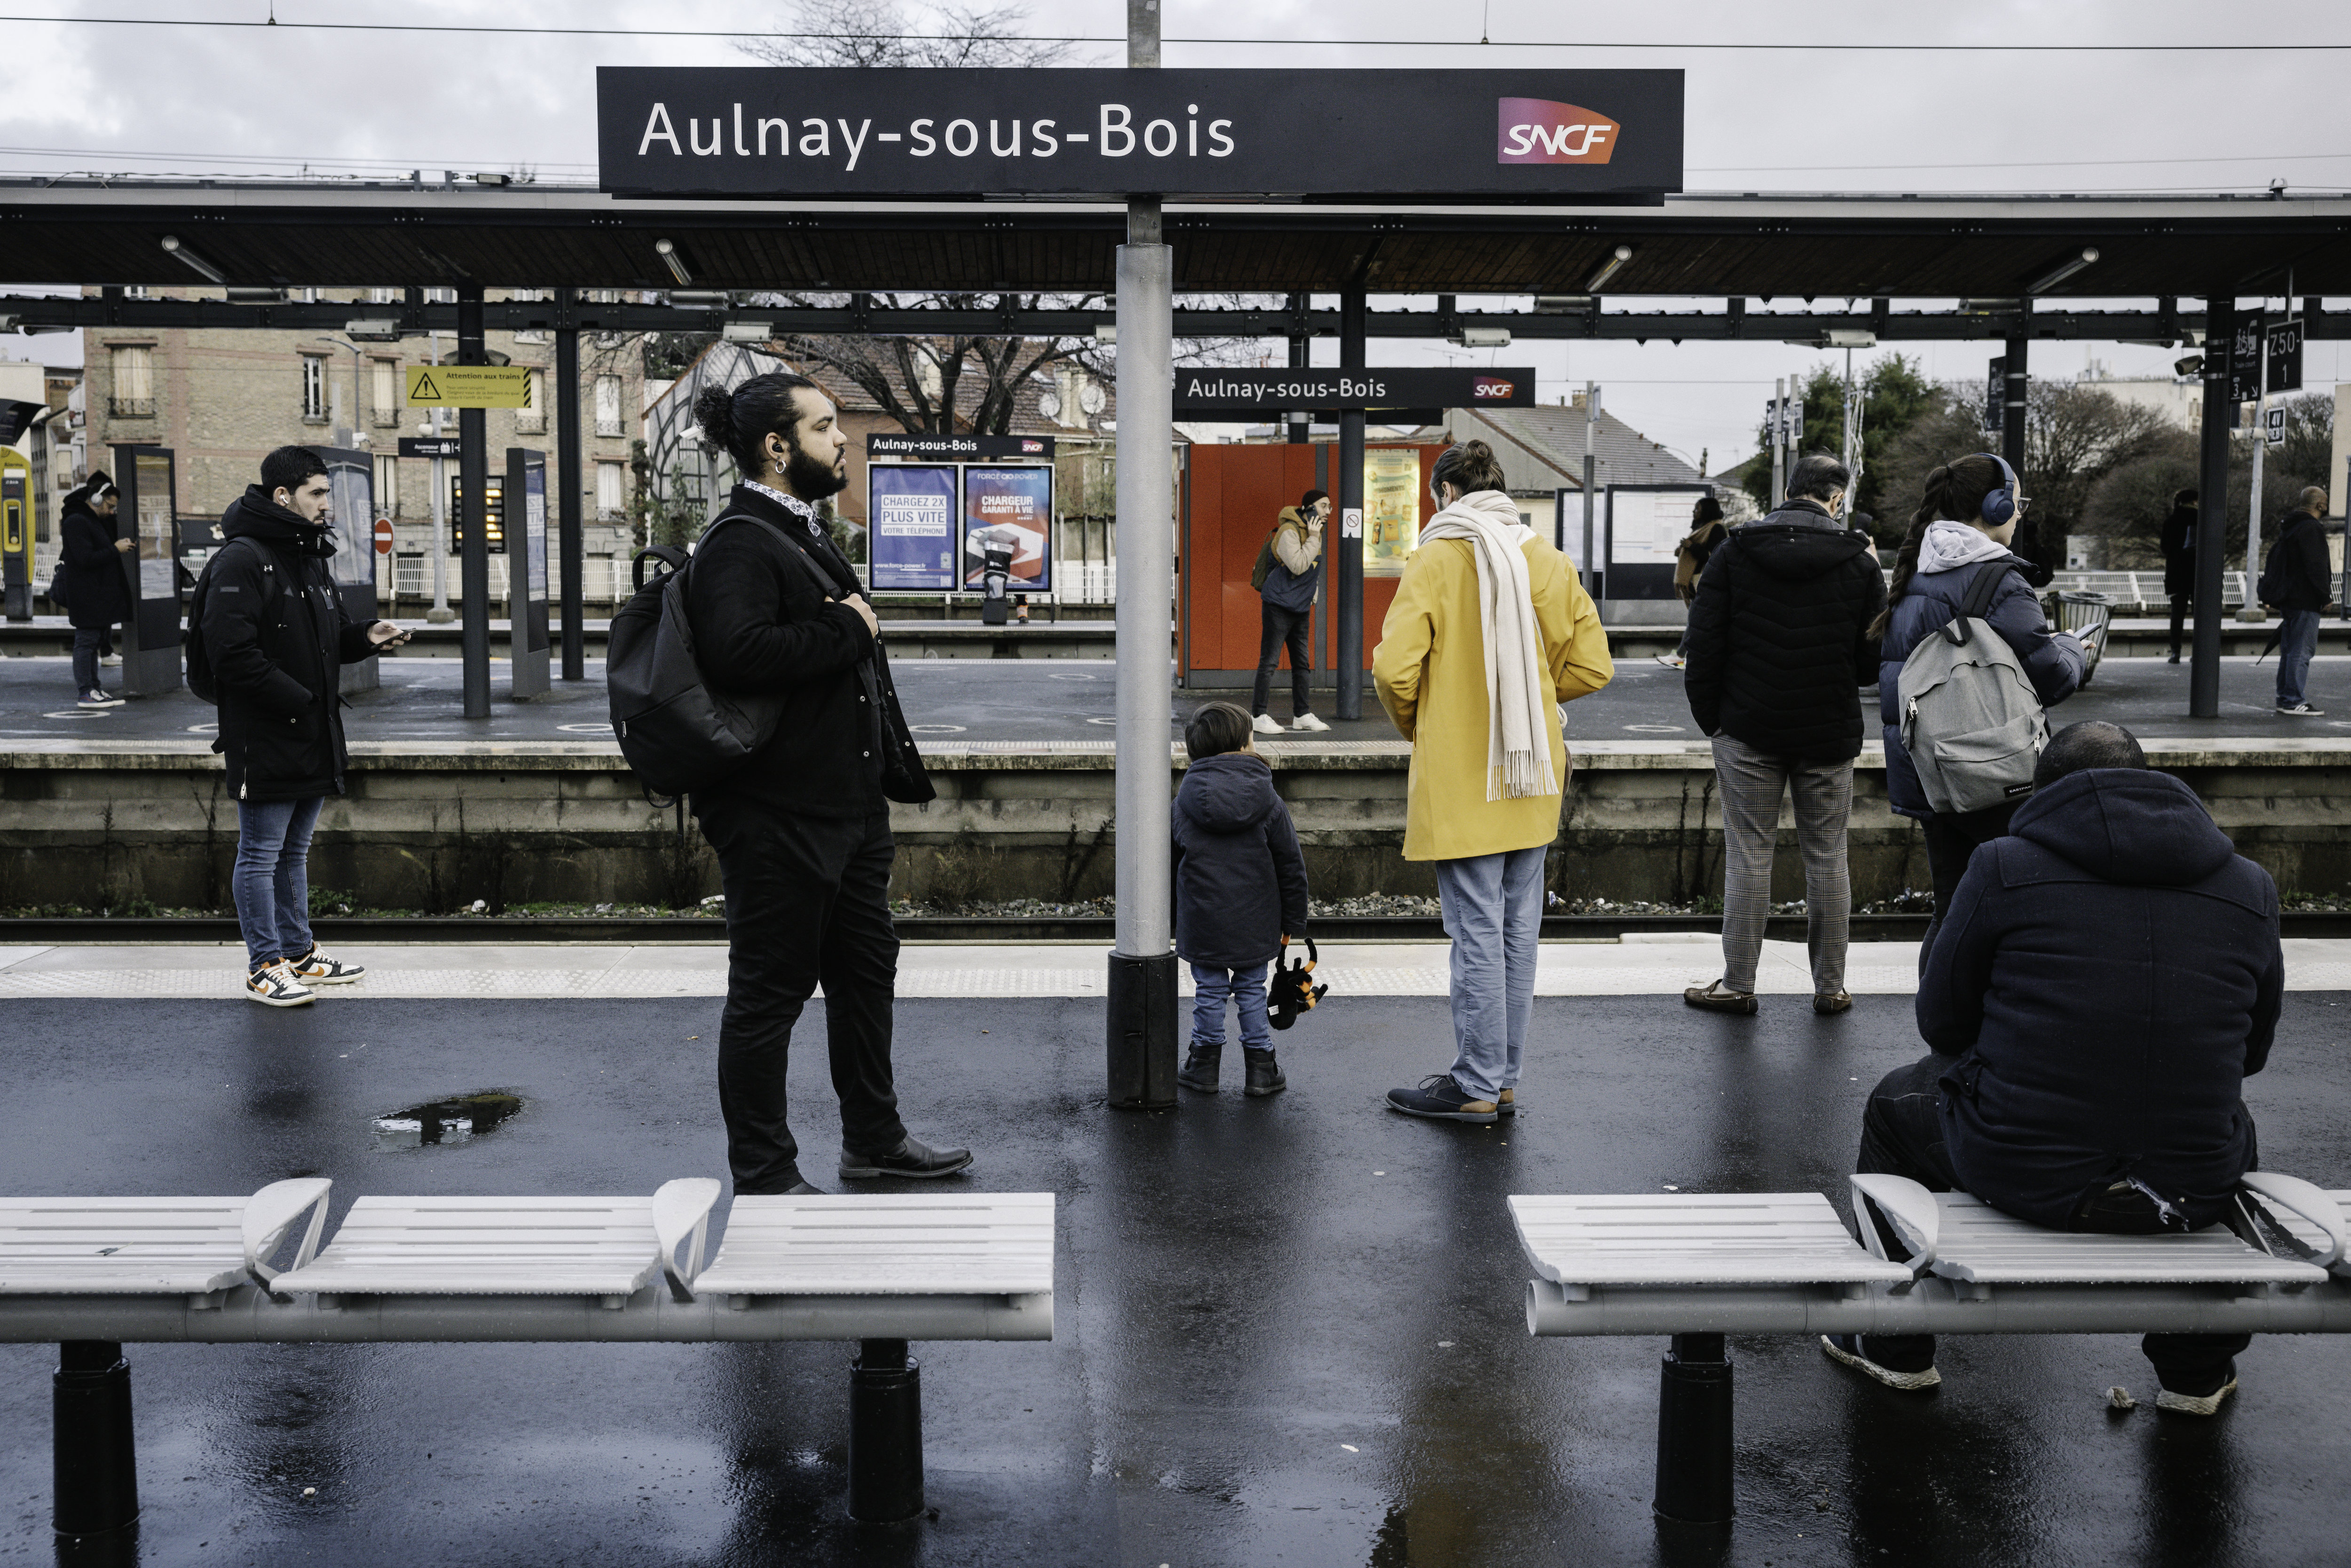 Le trafic du RER B est interrompu durant deux jours entre Paris et Aulnay-sous-Bois (photo)
© Arnaud Dumontier pour Le Parisien